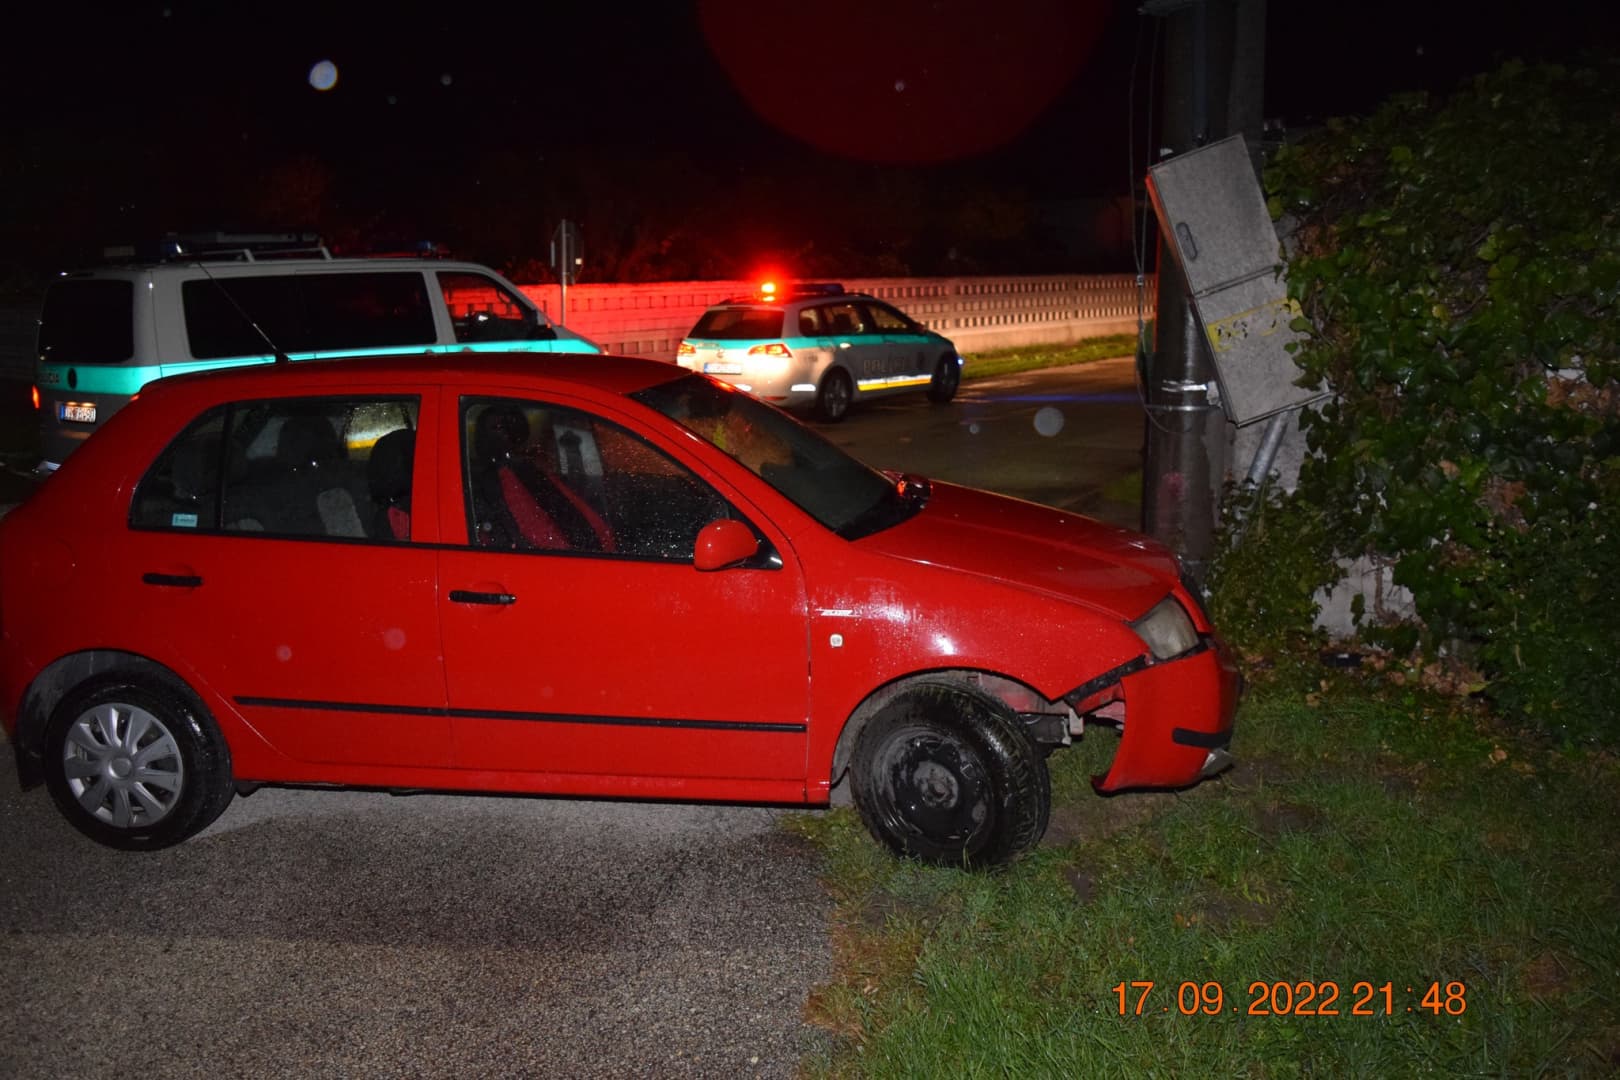 Betonoszlopnak csapódott egy kocsi Nagyudvarnokban – a rendőröket is meglepte, milyen állapotban találták a sofőrt (FOTÓ)